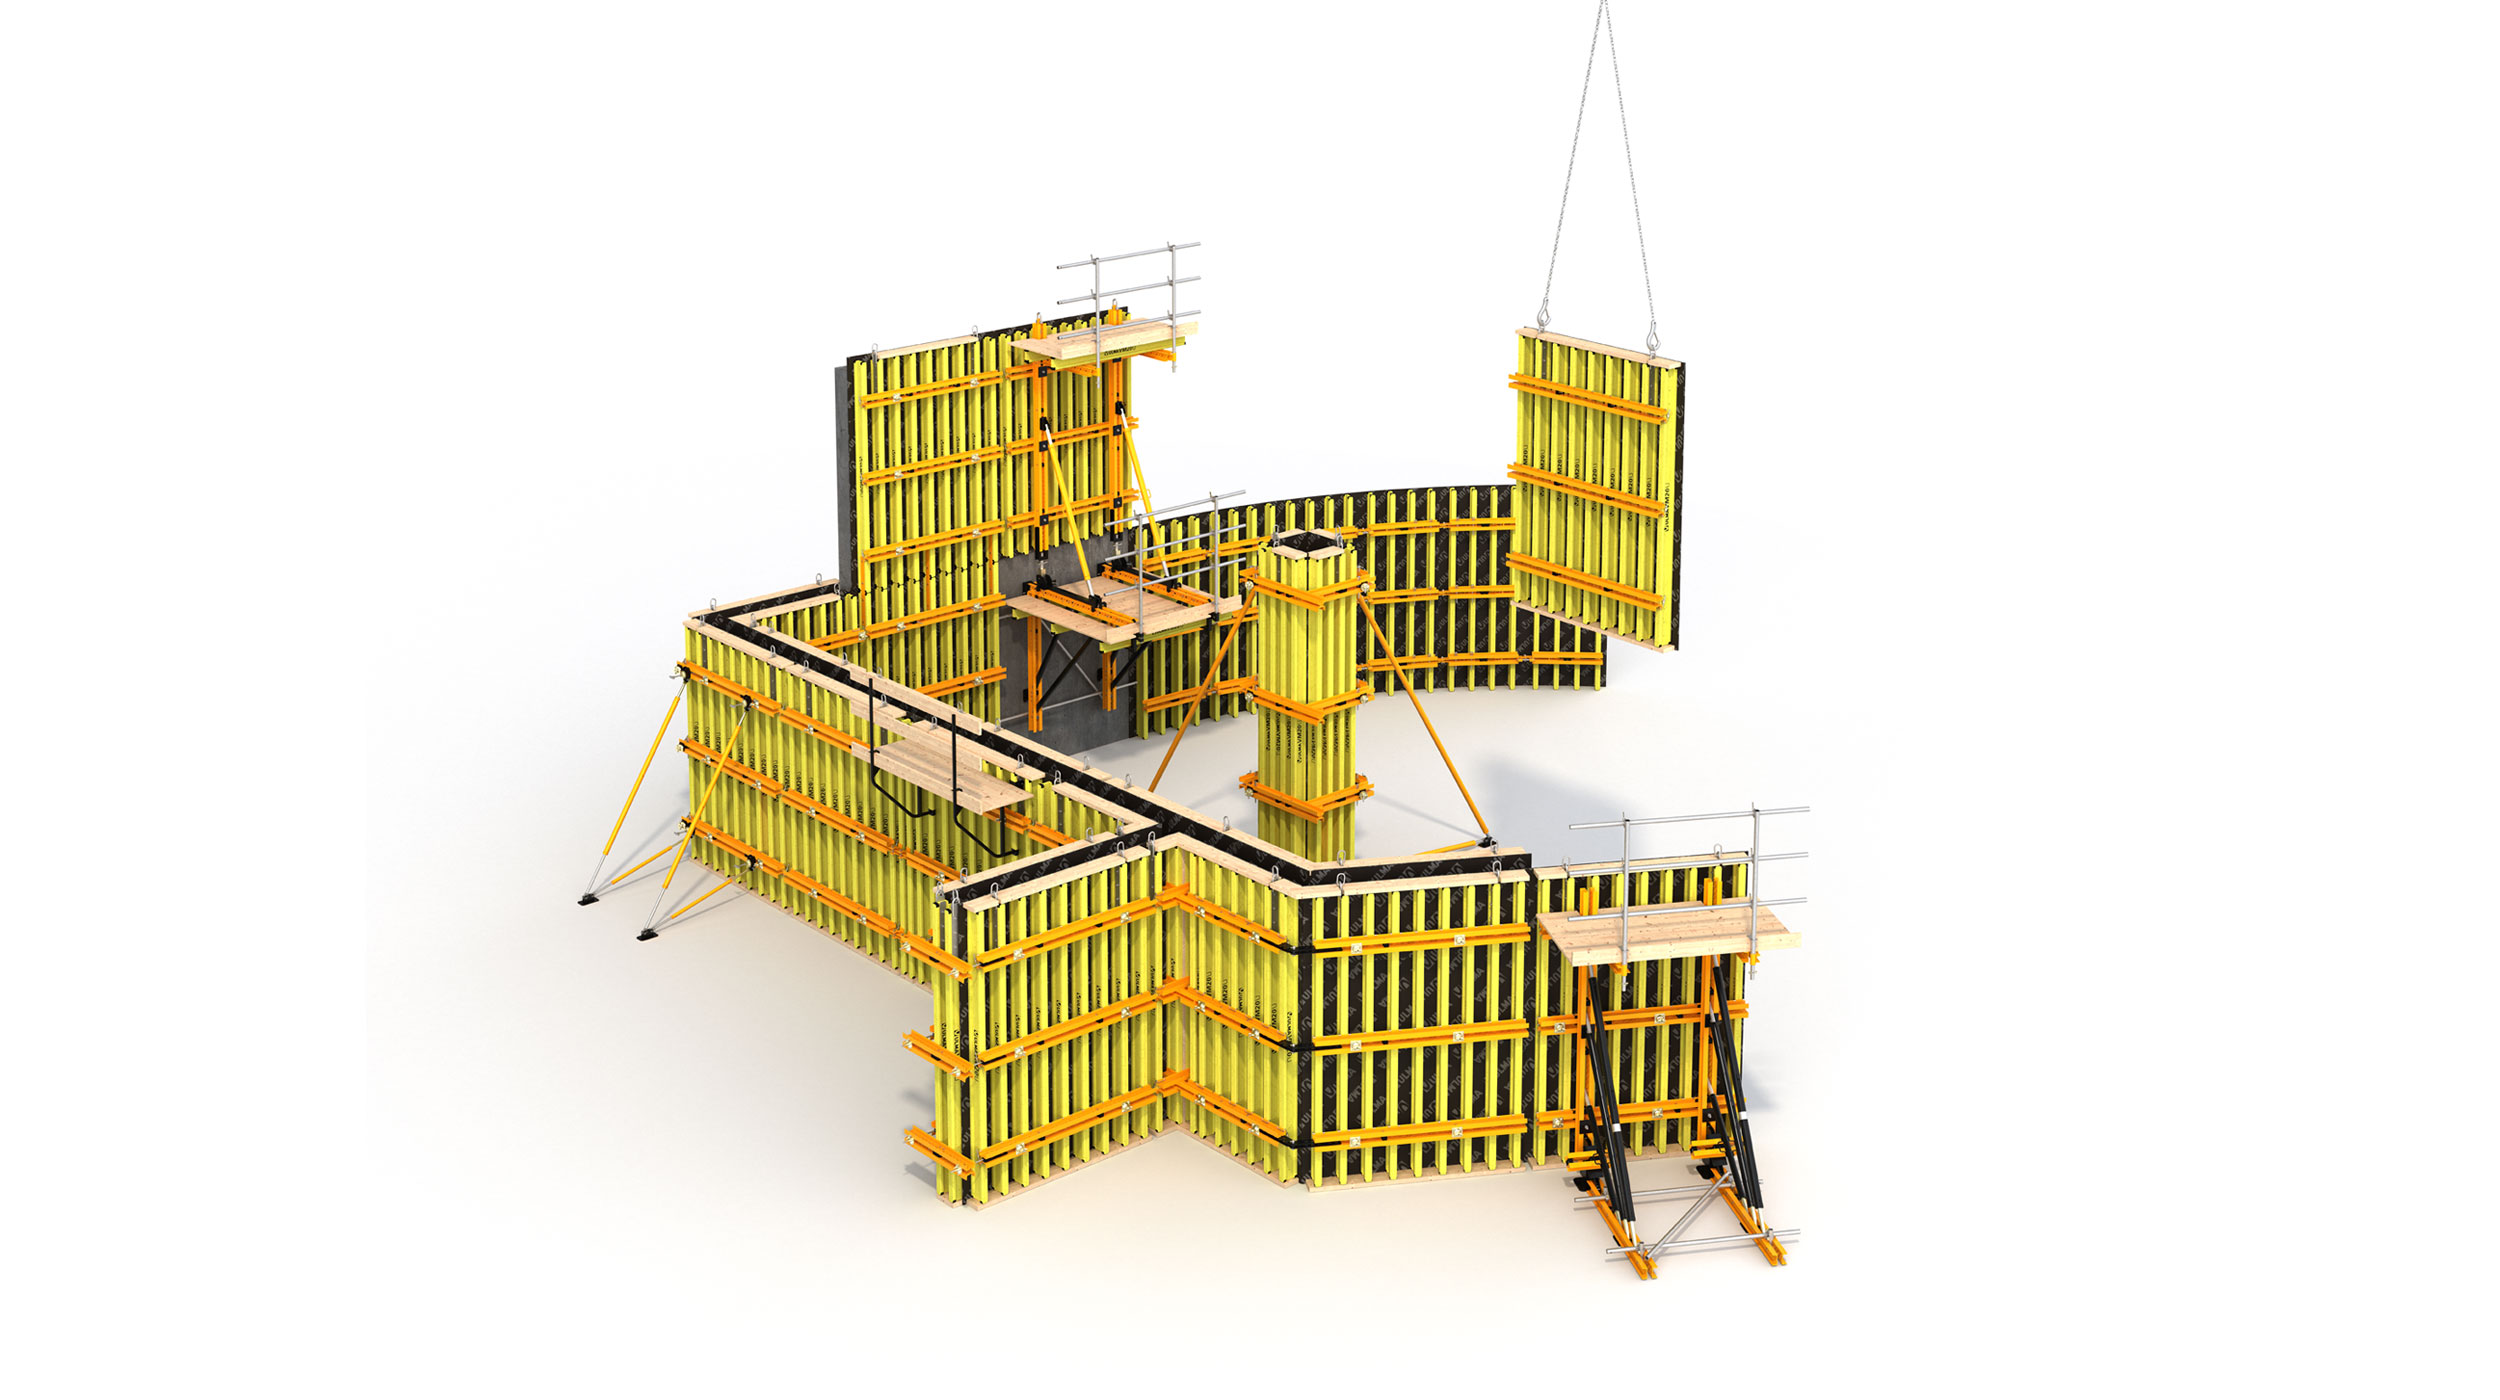 Sistema de encofrado de vigas flexible y versátil, para edificación y obra civil. Sistema eficiente con excelentes acabados de concreto.